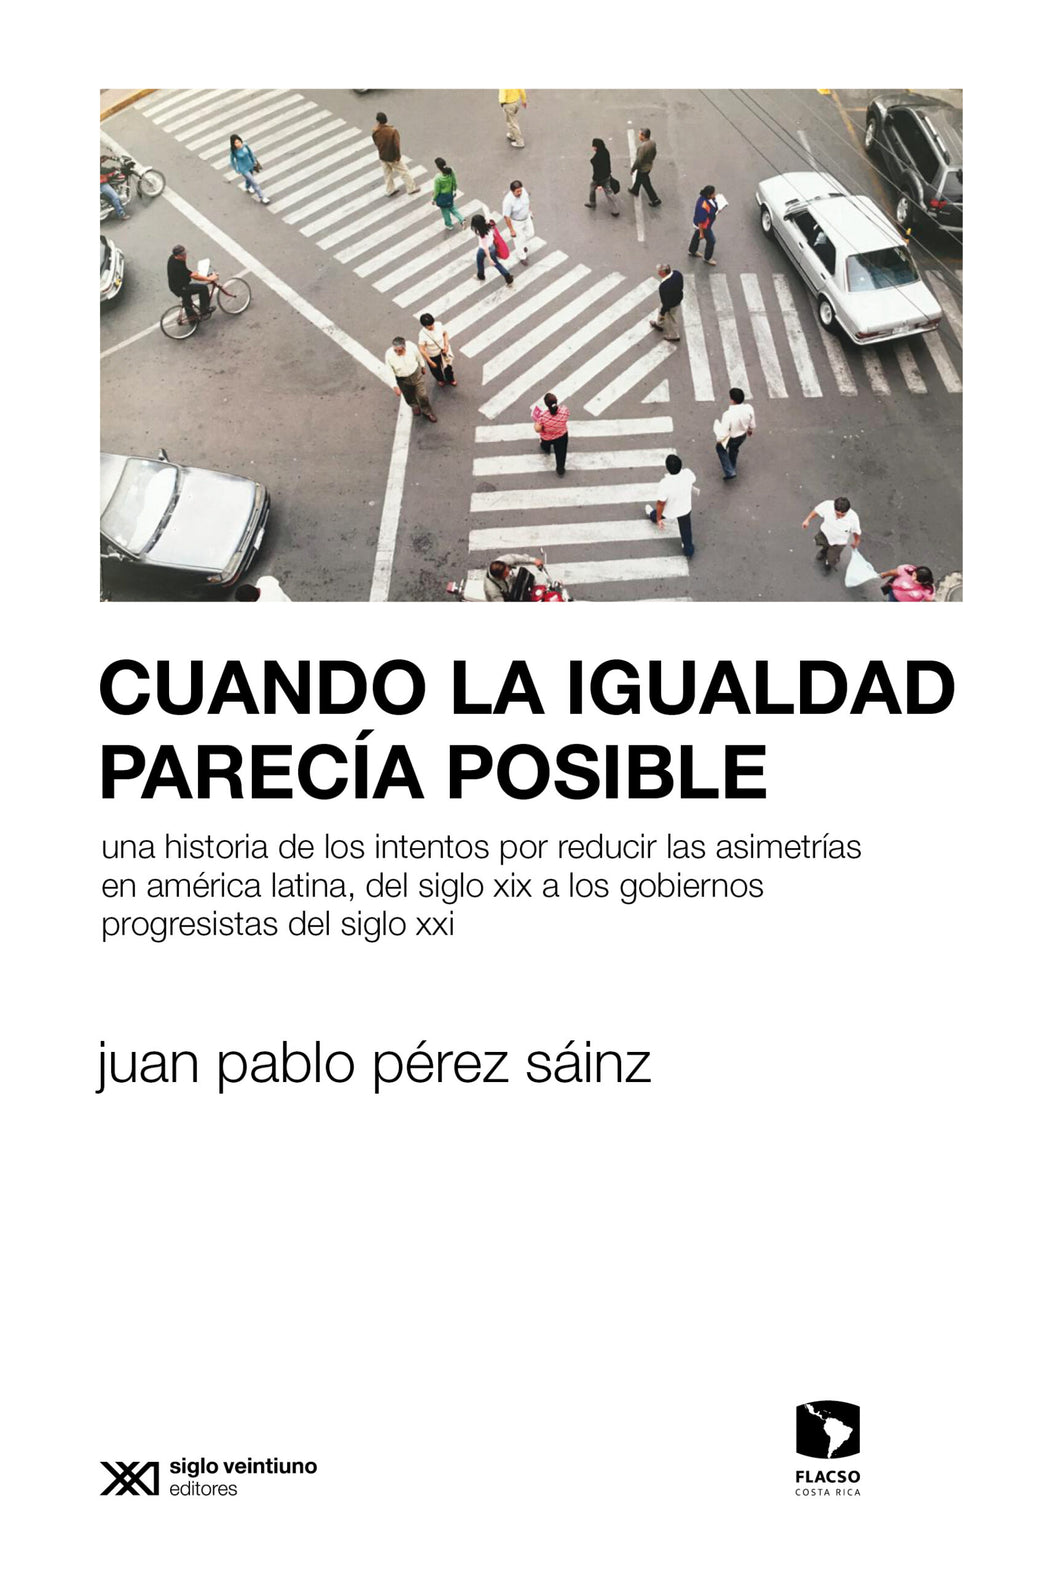 CUANDO LA IGUALDAD PARECÍA IMPOSIBLE - Juan Pablo Pérez Sáinz